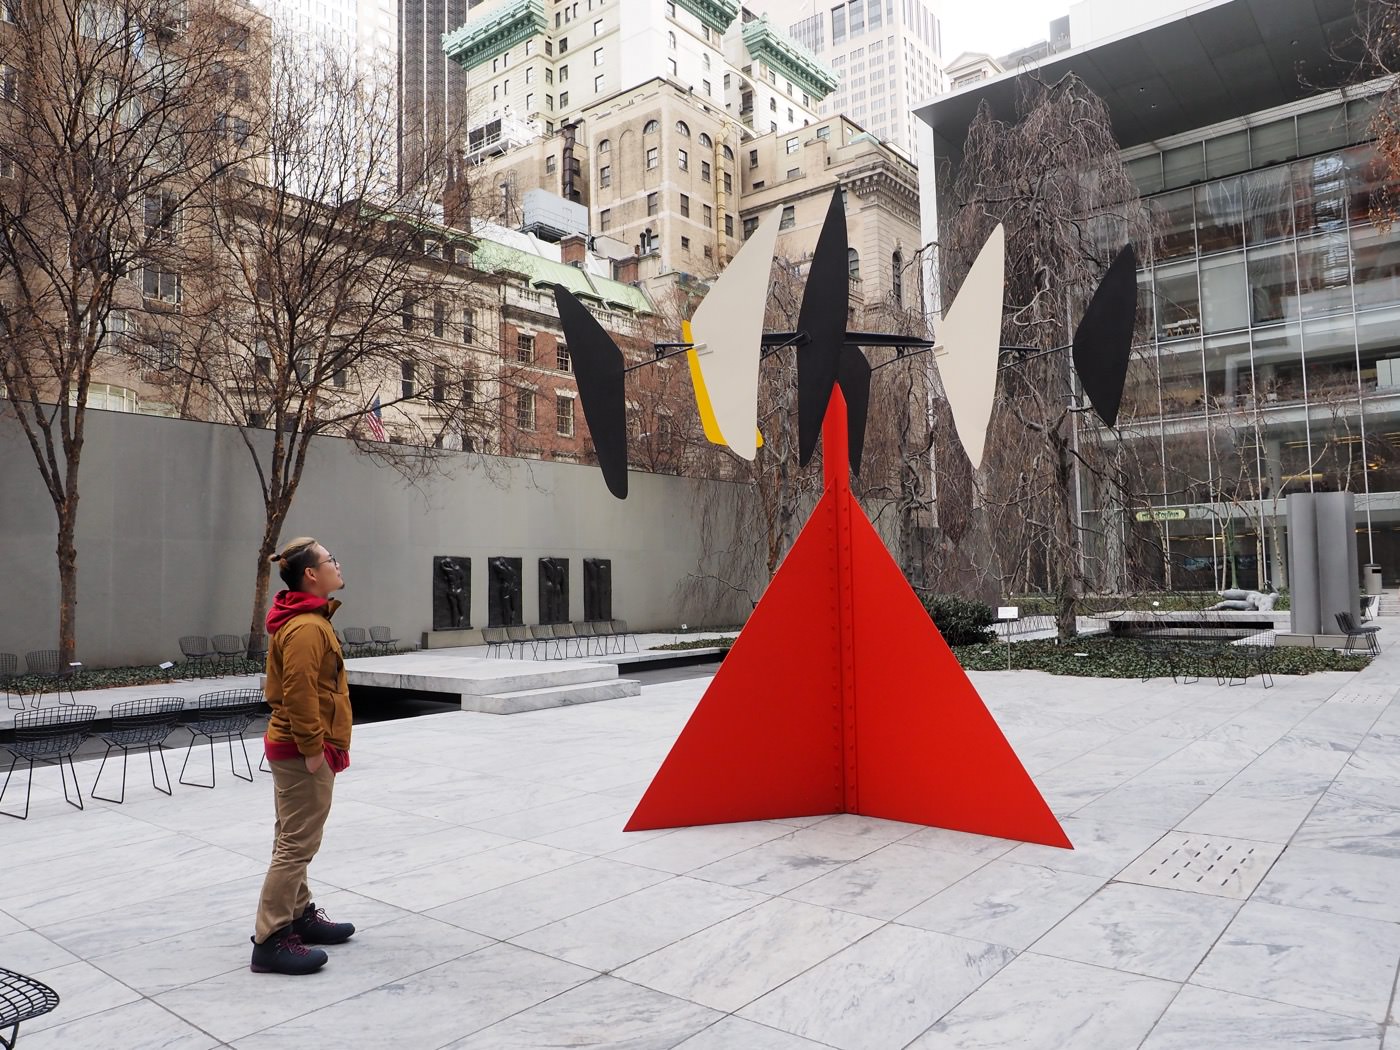 紐約景點 曼哈頓 MoMA 現代藝術博物館 The Museum of Modern Art - 一口冒險 Bitesized Adventure